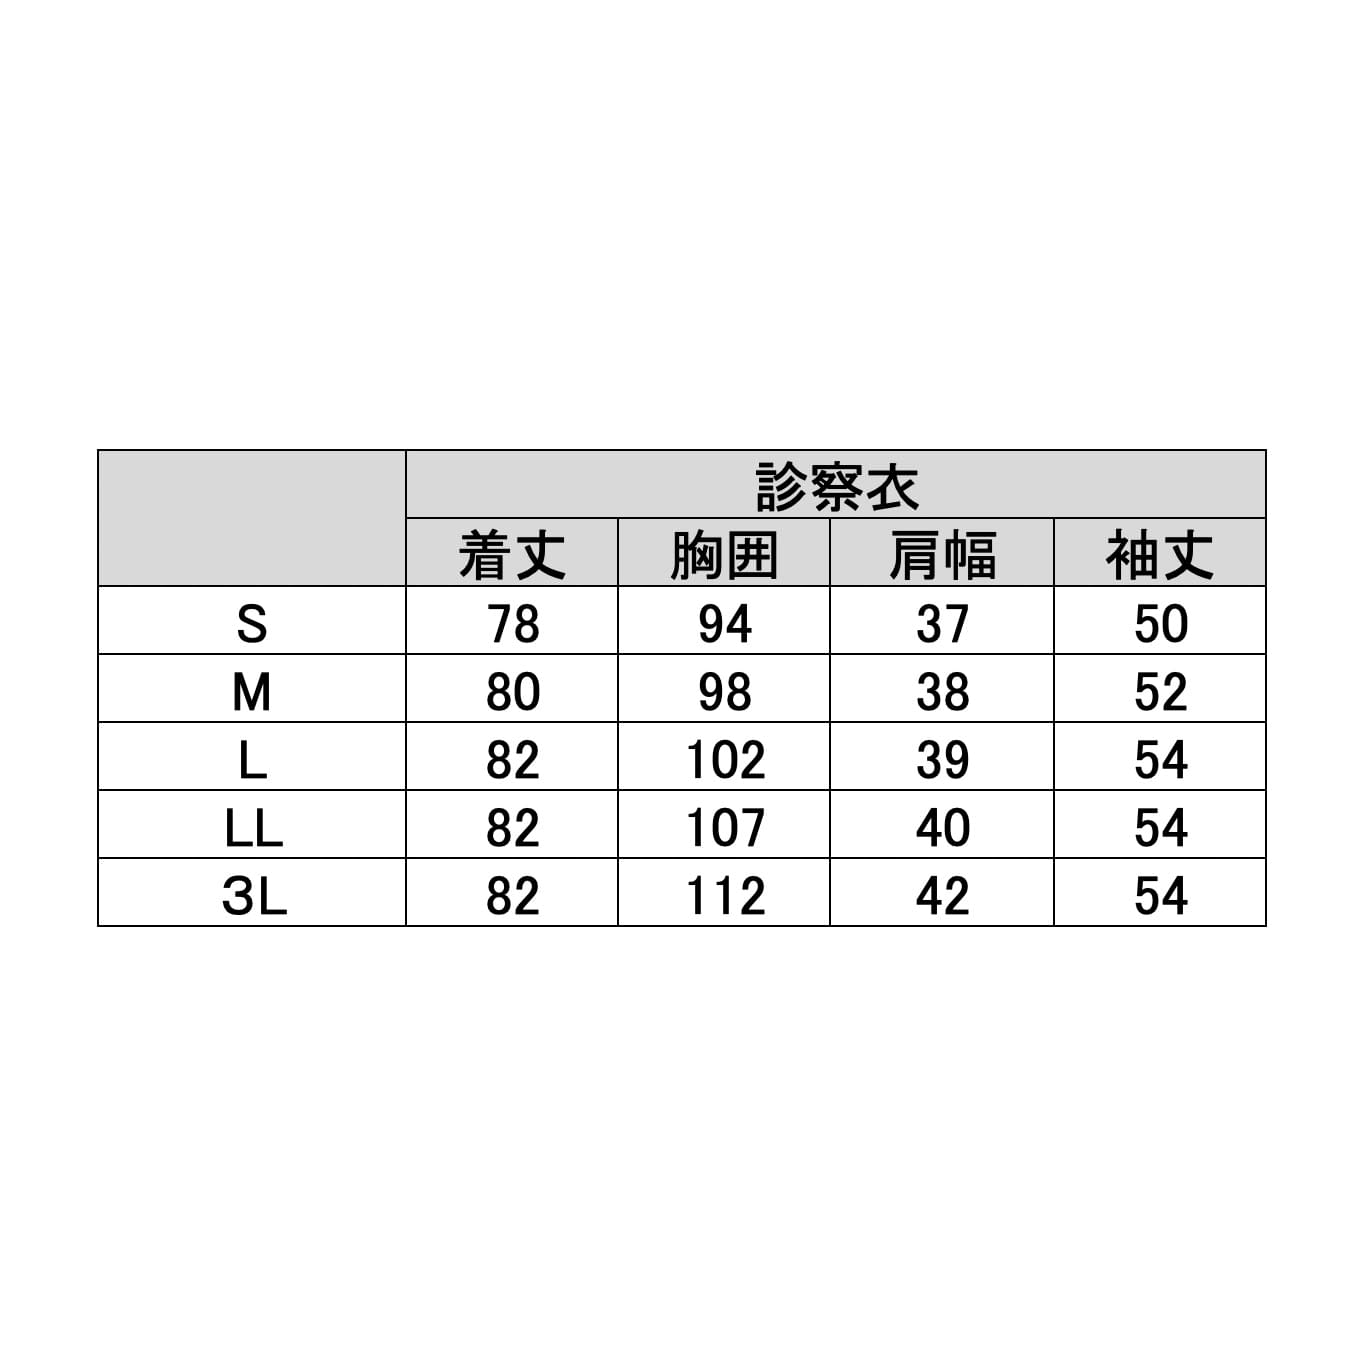 レディース診察衣　KZN127-40　M　ホワイトＭ【ＫＡＺＥＮ】(KZN127-40)(24-7018-00-02)